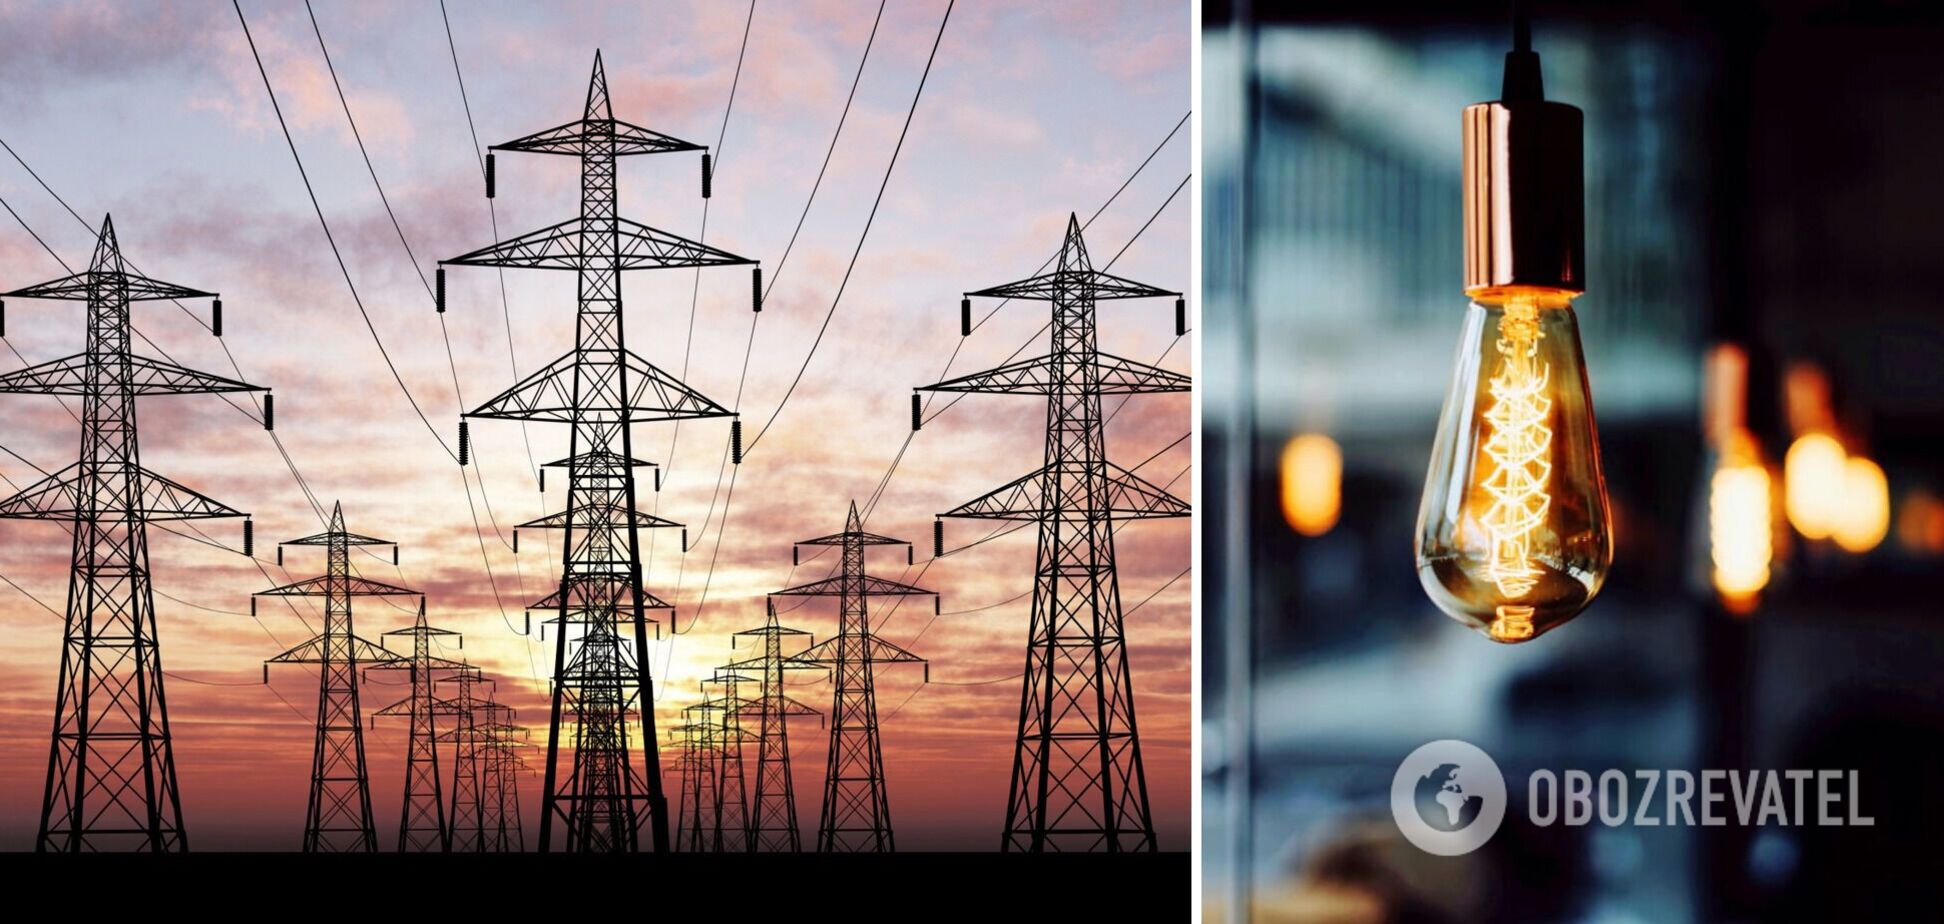 Поставщики электроэнергии просят власти принять меры по устранению критического долгового кризиса в энергетике